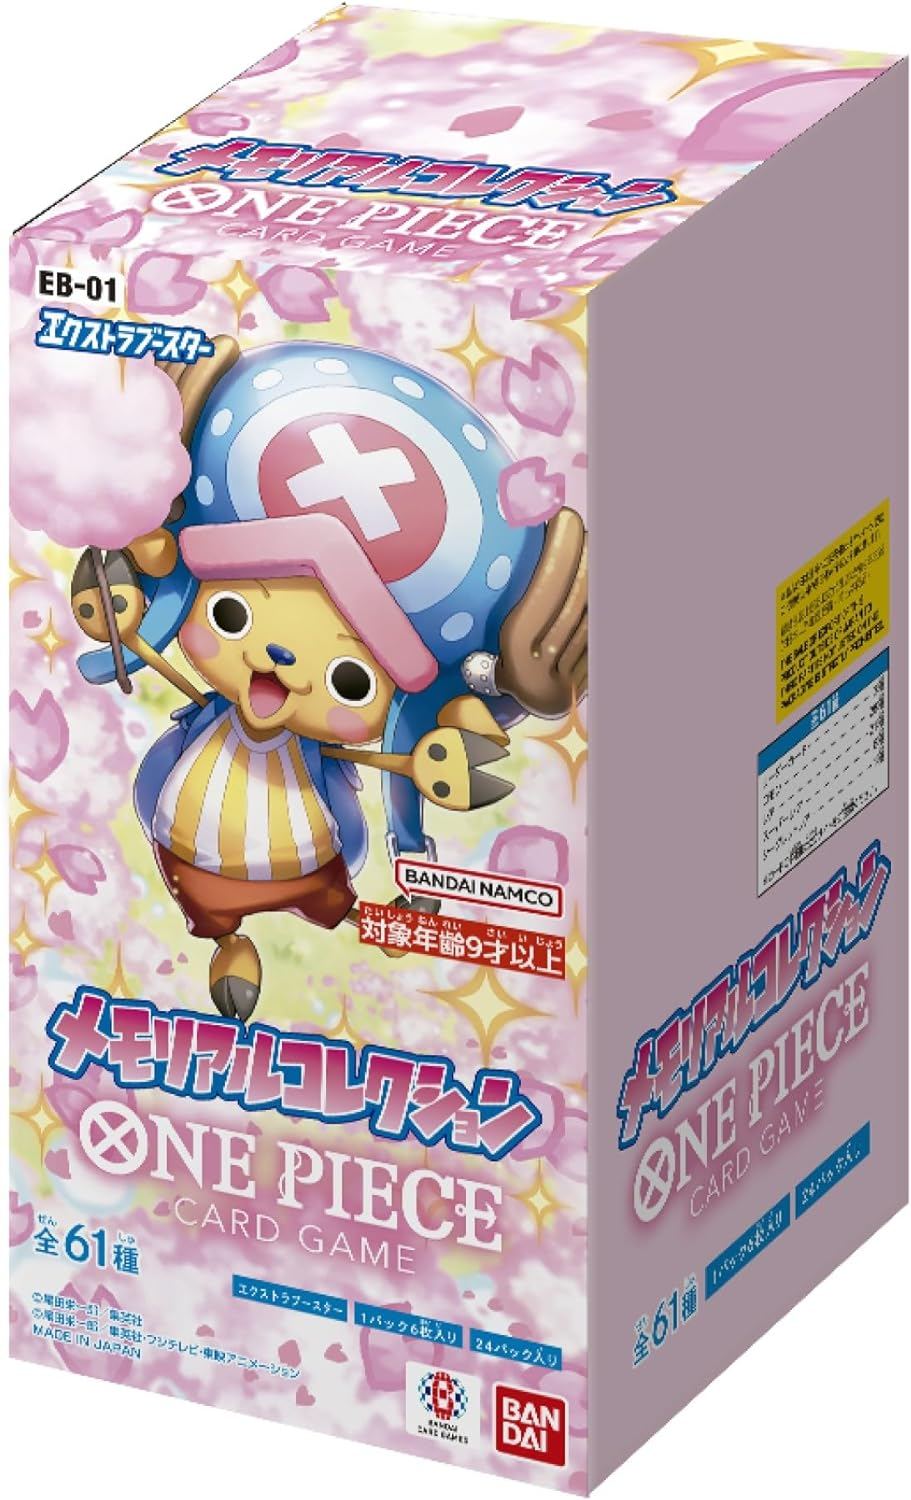 One Piece Card Game Extra Booster Memorial Collection EB-01 (Master Carton of 12 Boxes) Bandai